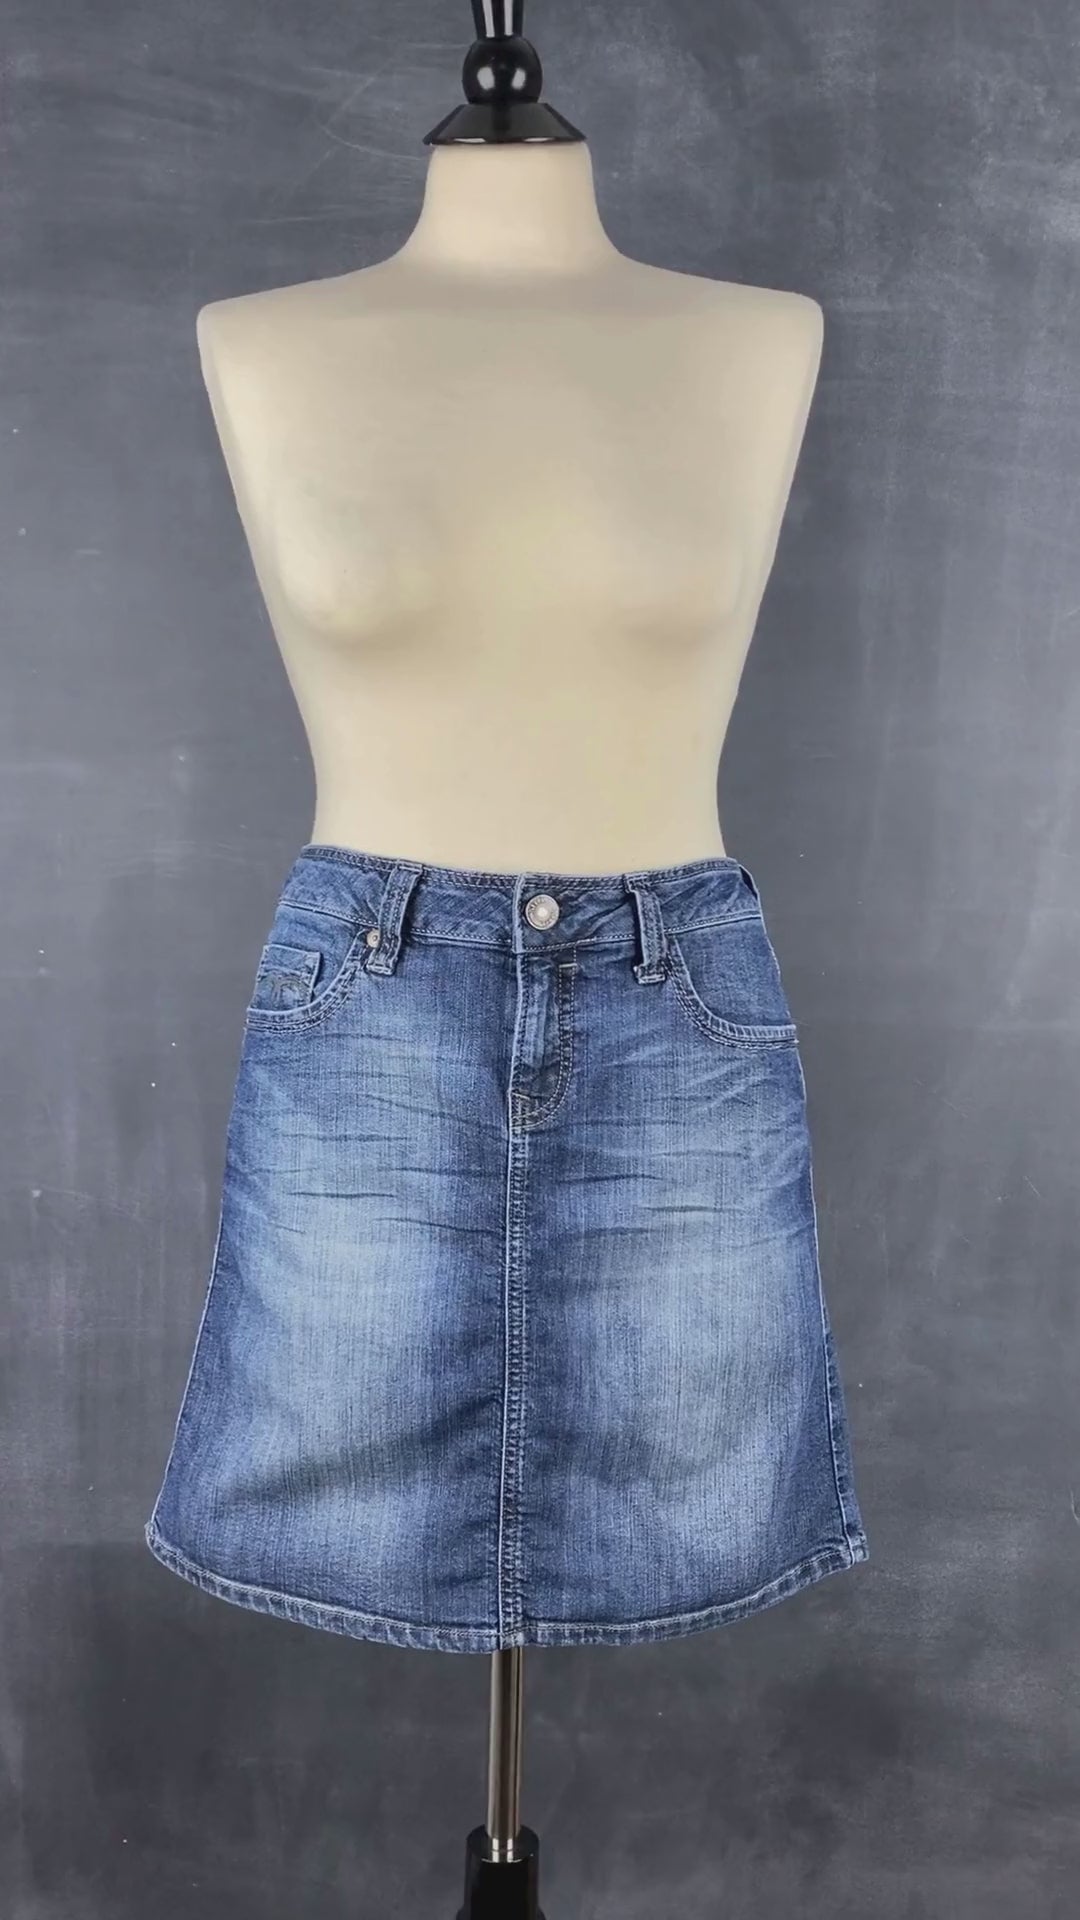 Jupe en jeans classique bleue Mavi, taille estimée à small. Vue de la vidéo qui présente tous les détails de la jupe.